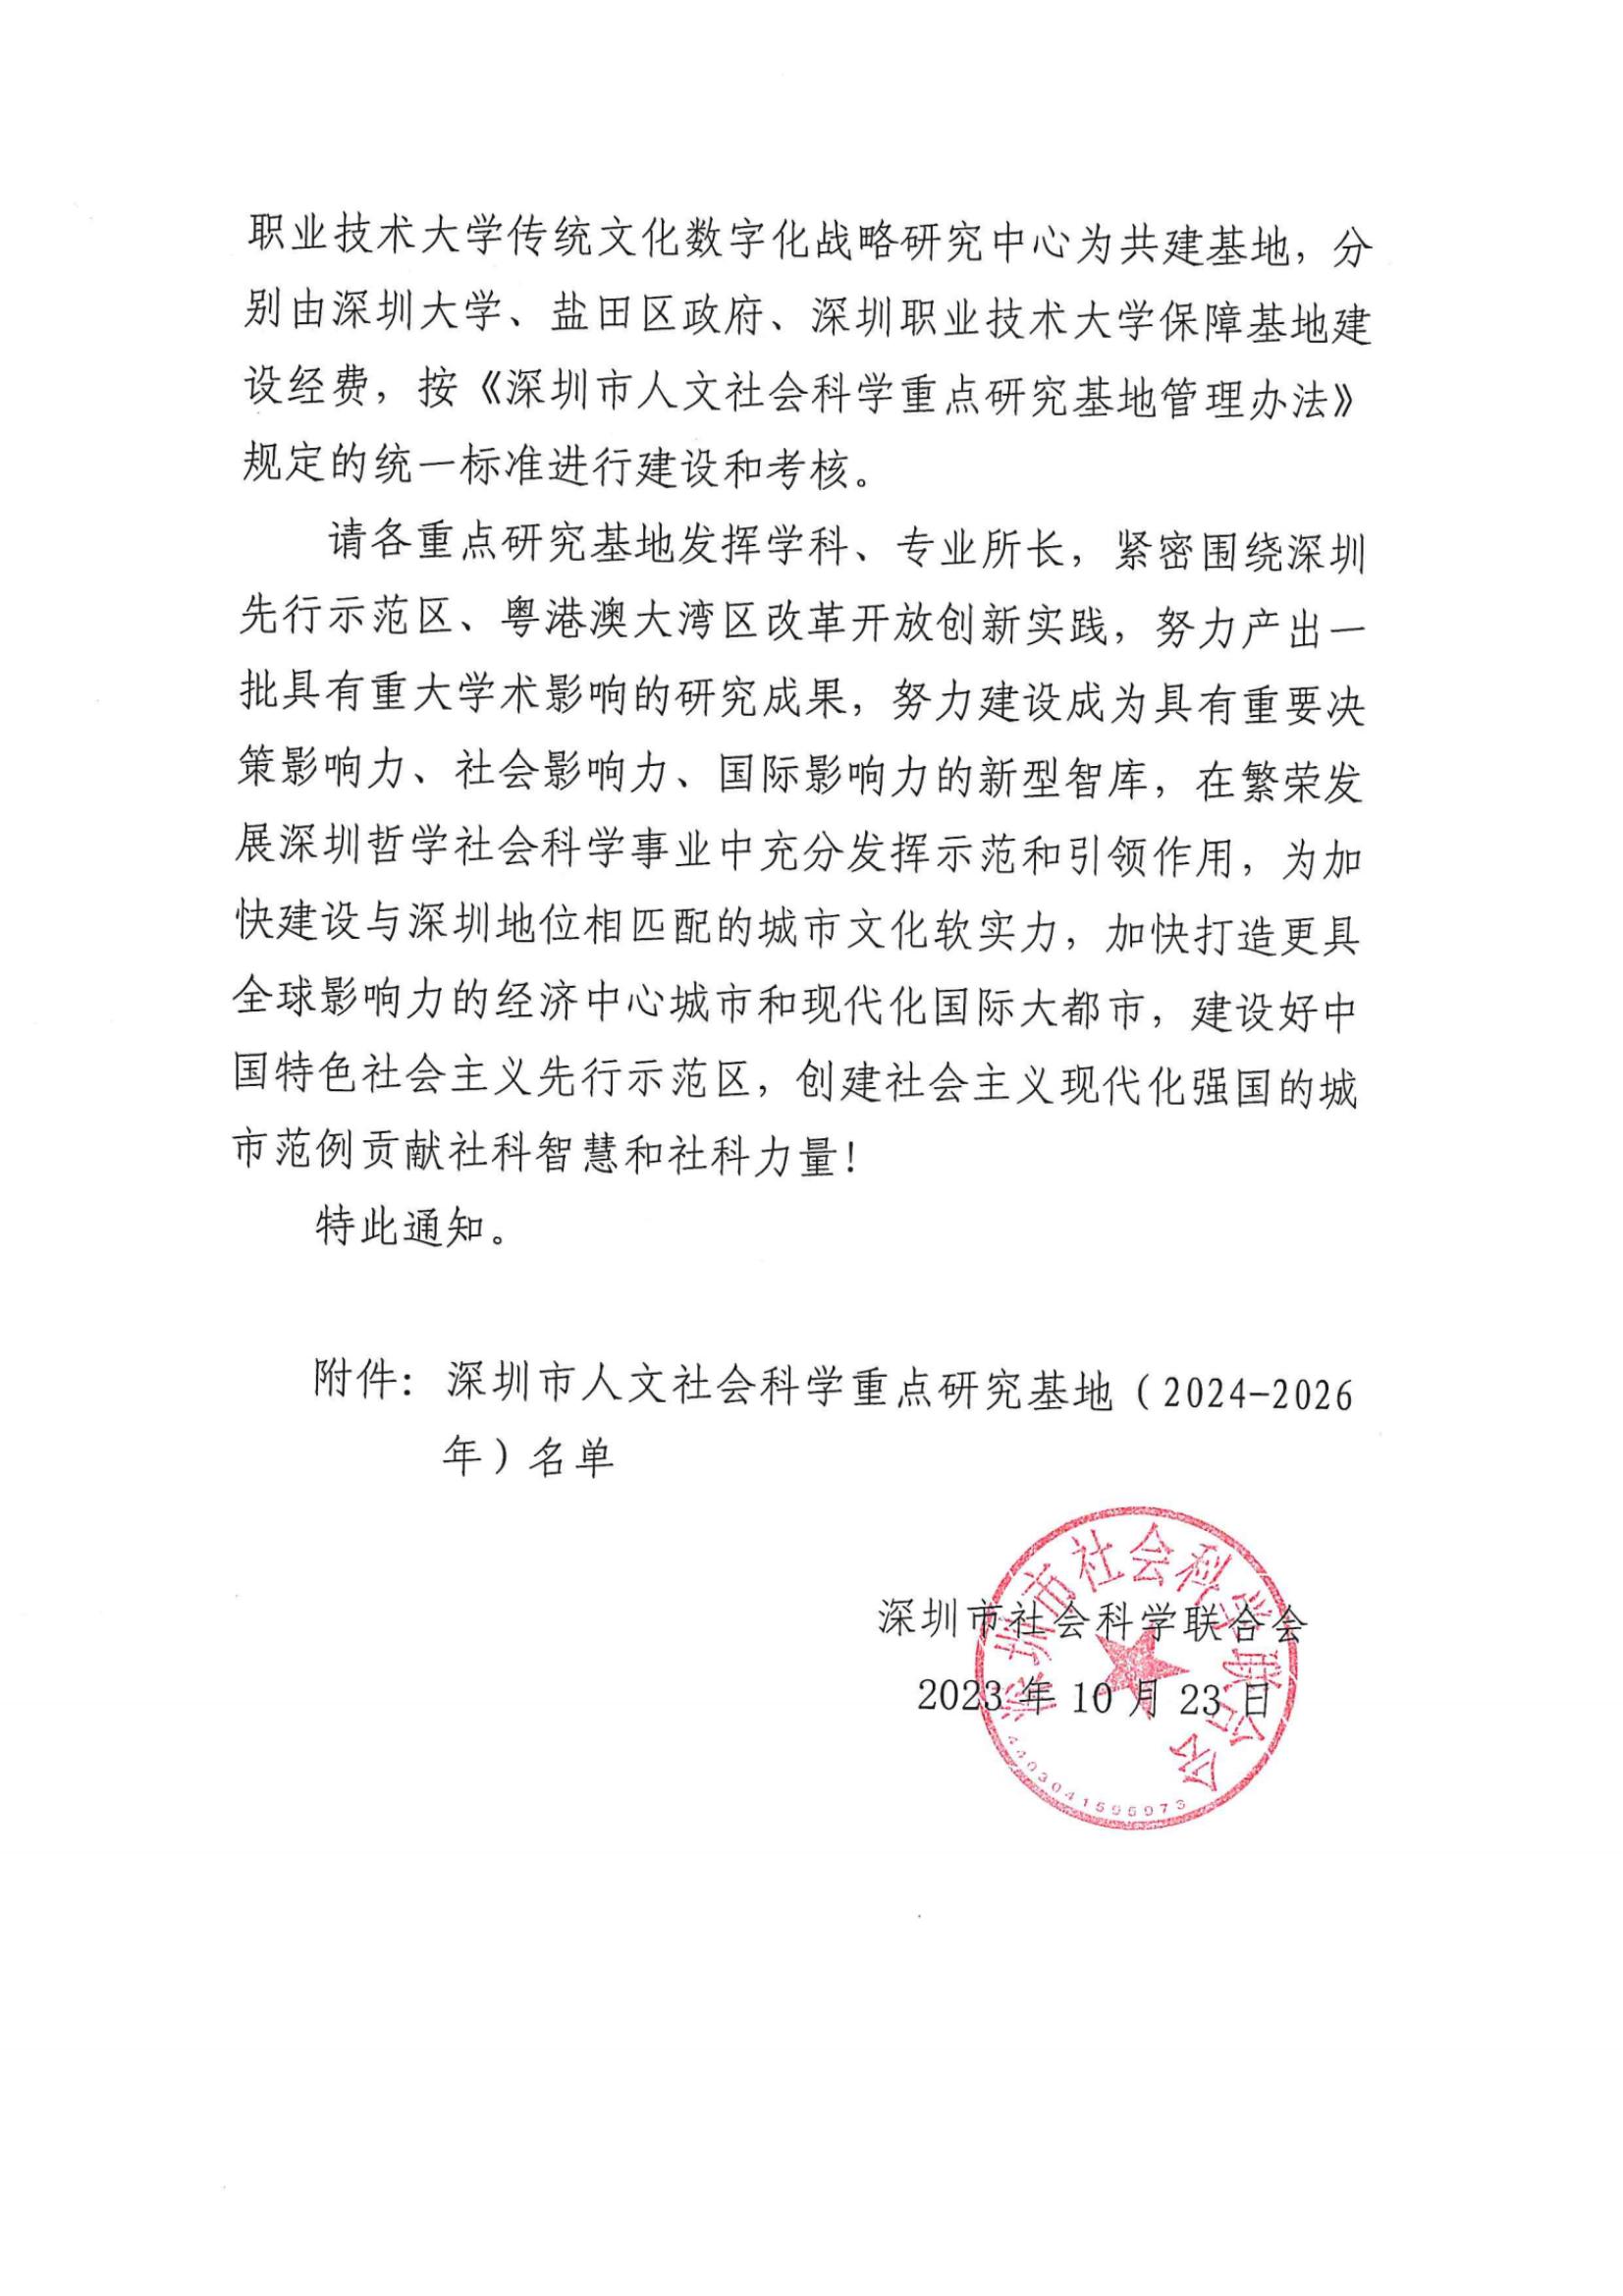 关于公布深圳市人文社会科学重点研究基地（2024-2026年）名单的通知_纯图版_01.jpg